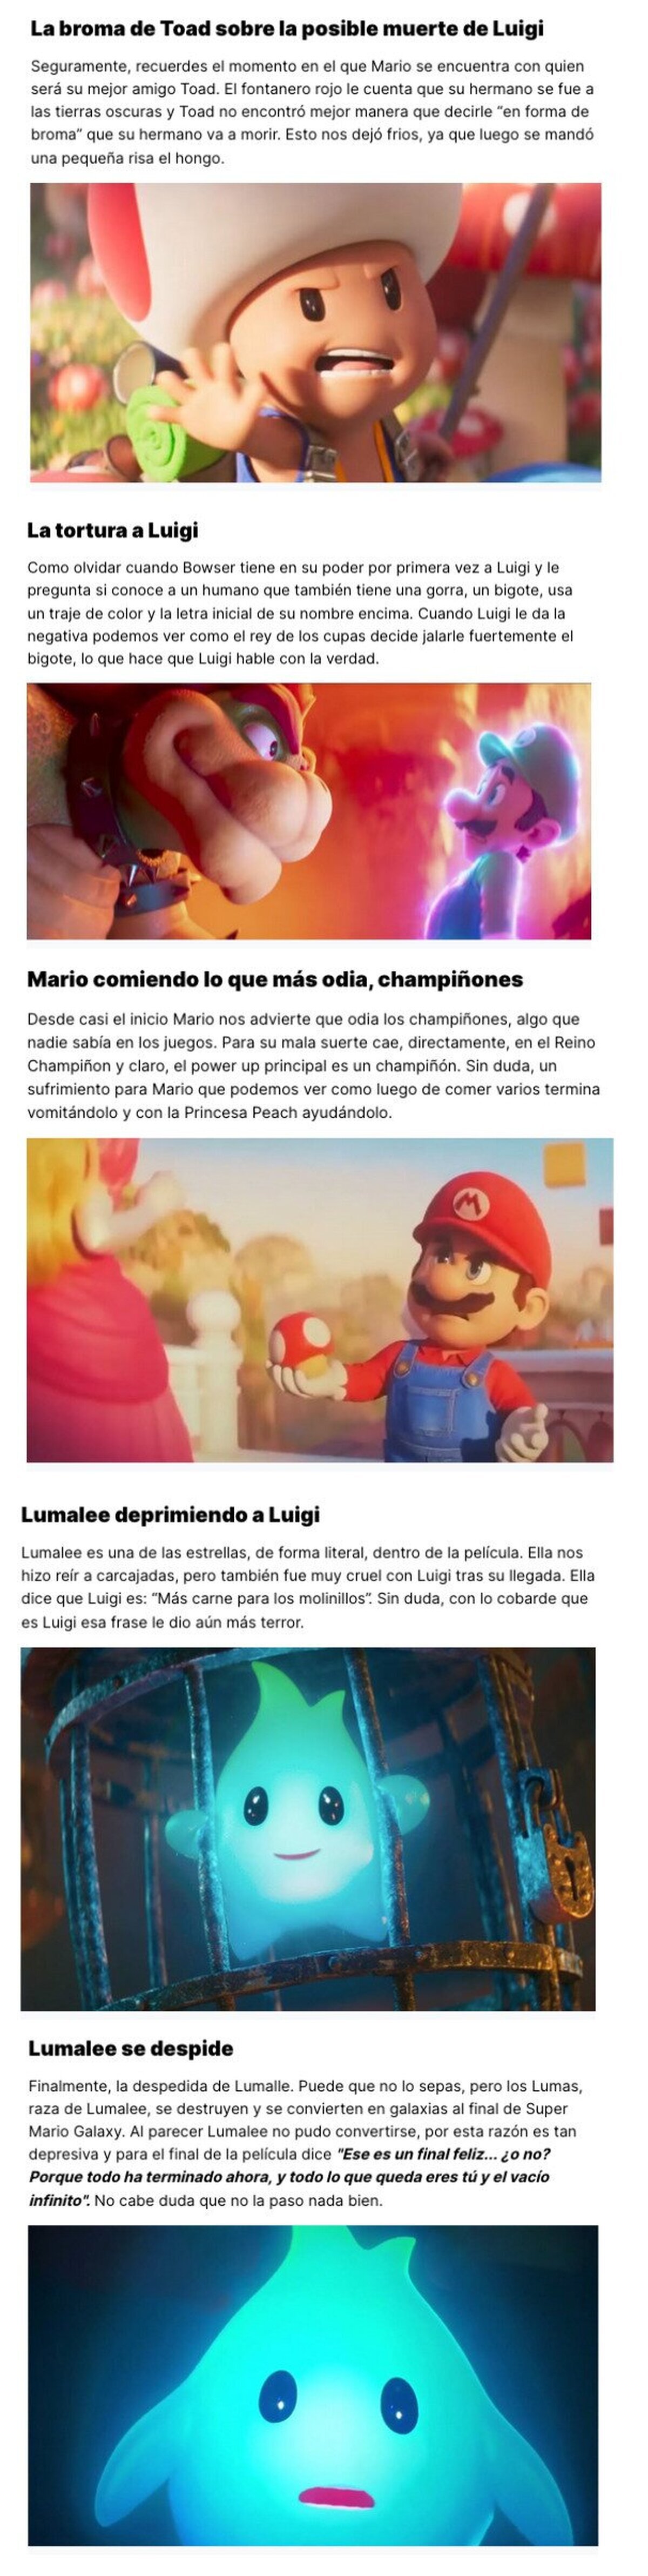 GALERÍA: 5 bromas muy crueles que se colaron en la película de Mario